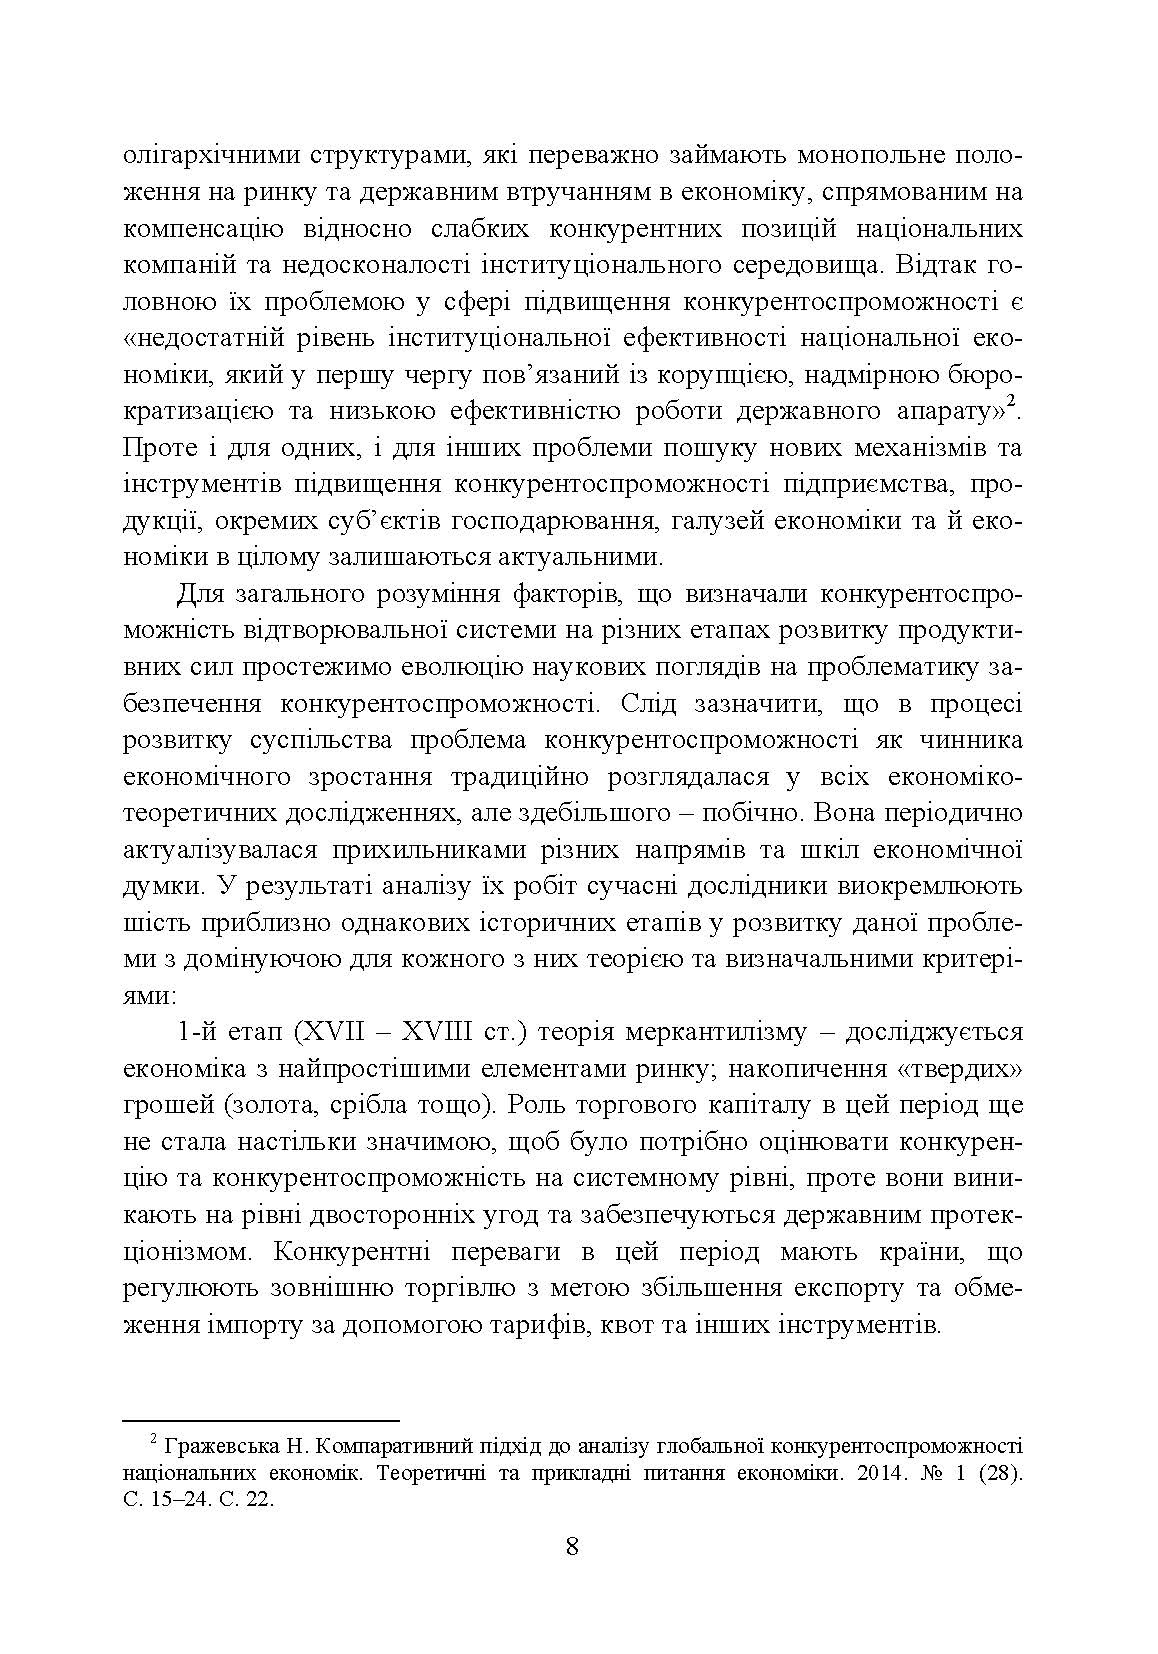 Конкурентоспроможність підприємства (2020 год)). Автор — П. І. Юхименко та ін. 